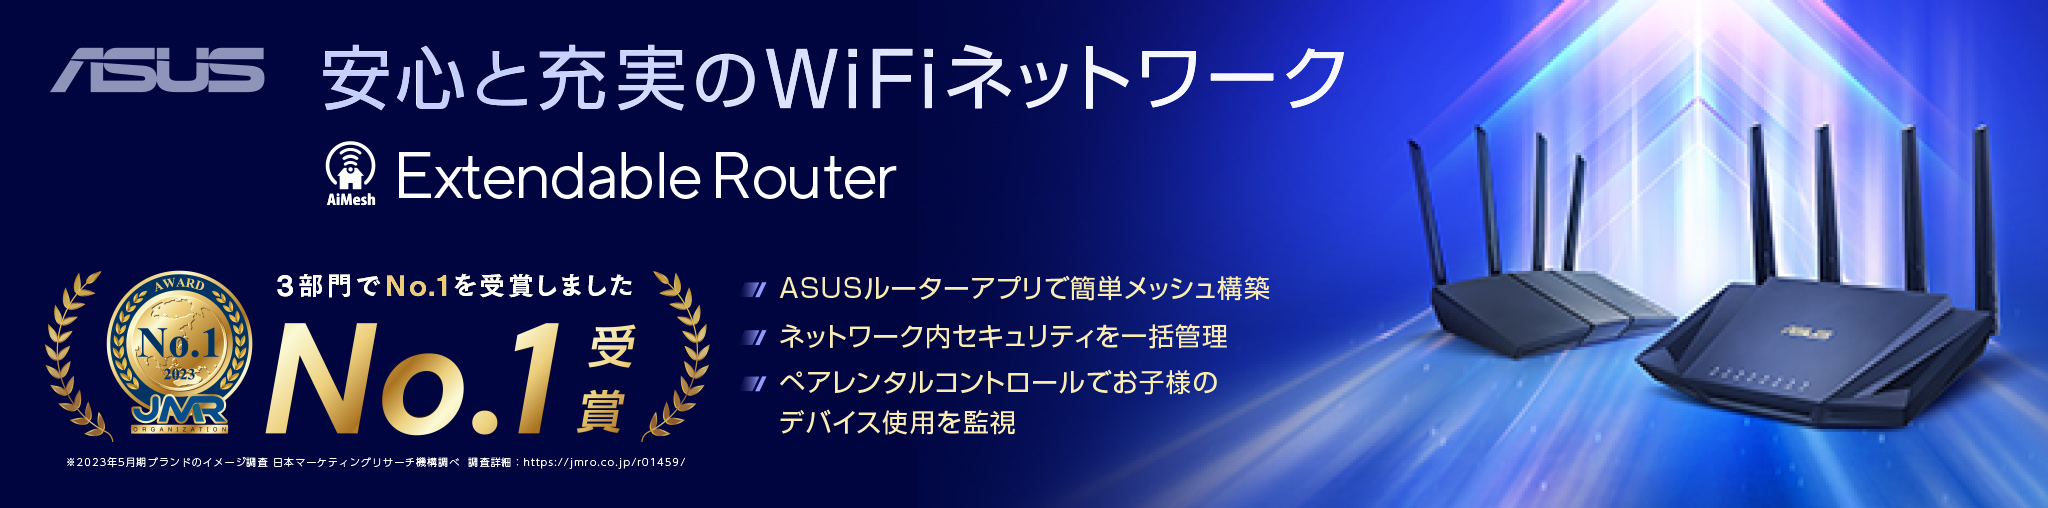 安心と充実のWiFiネットワークExtendable Router 3部門でNo.1を受賞しました